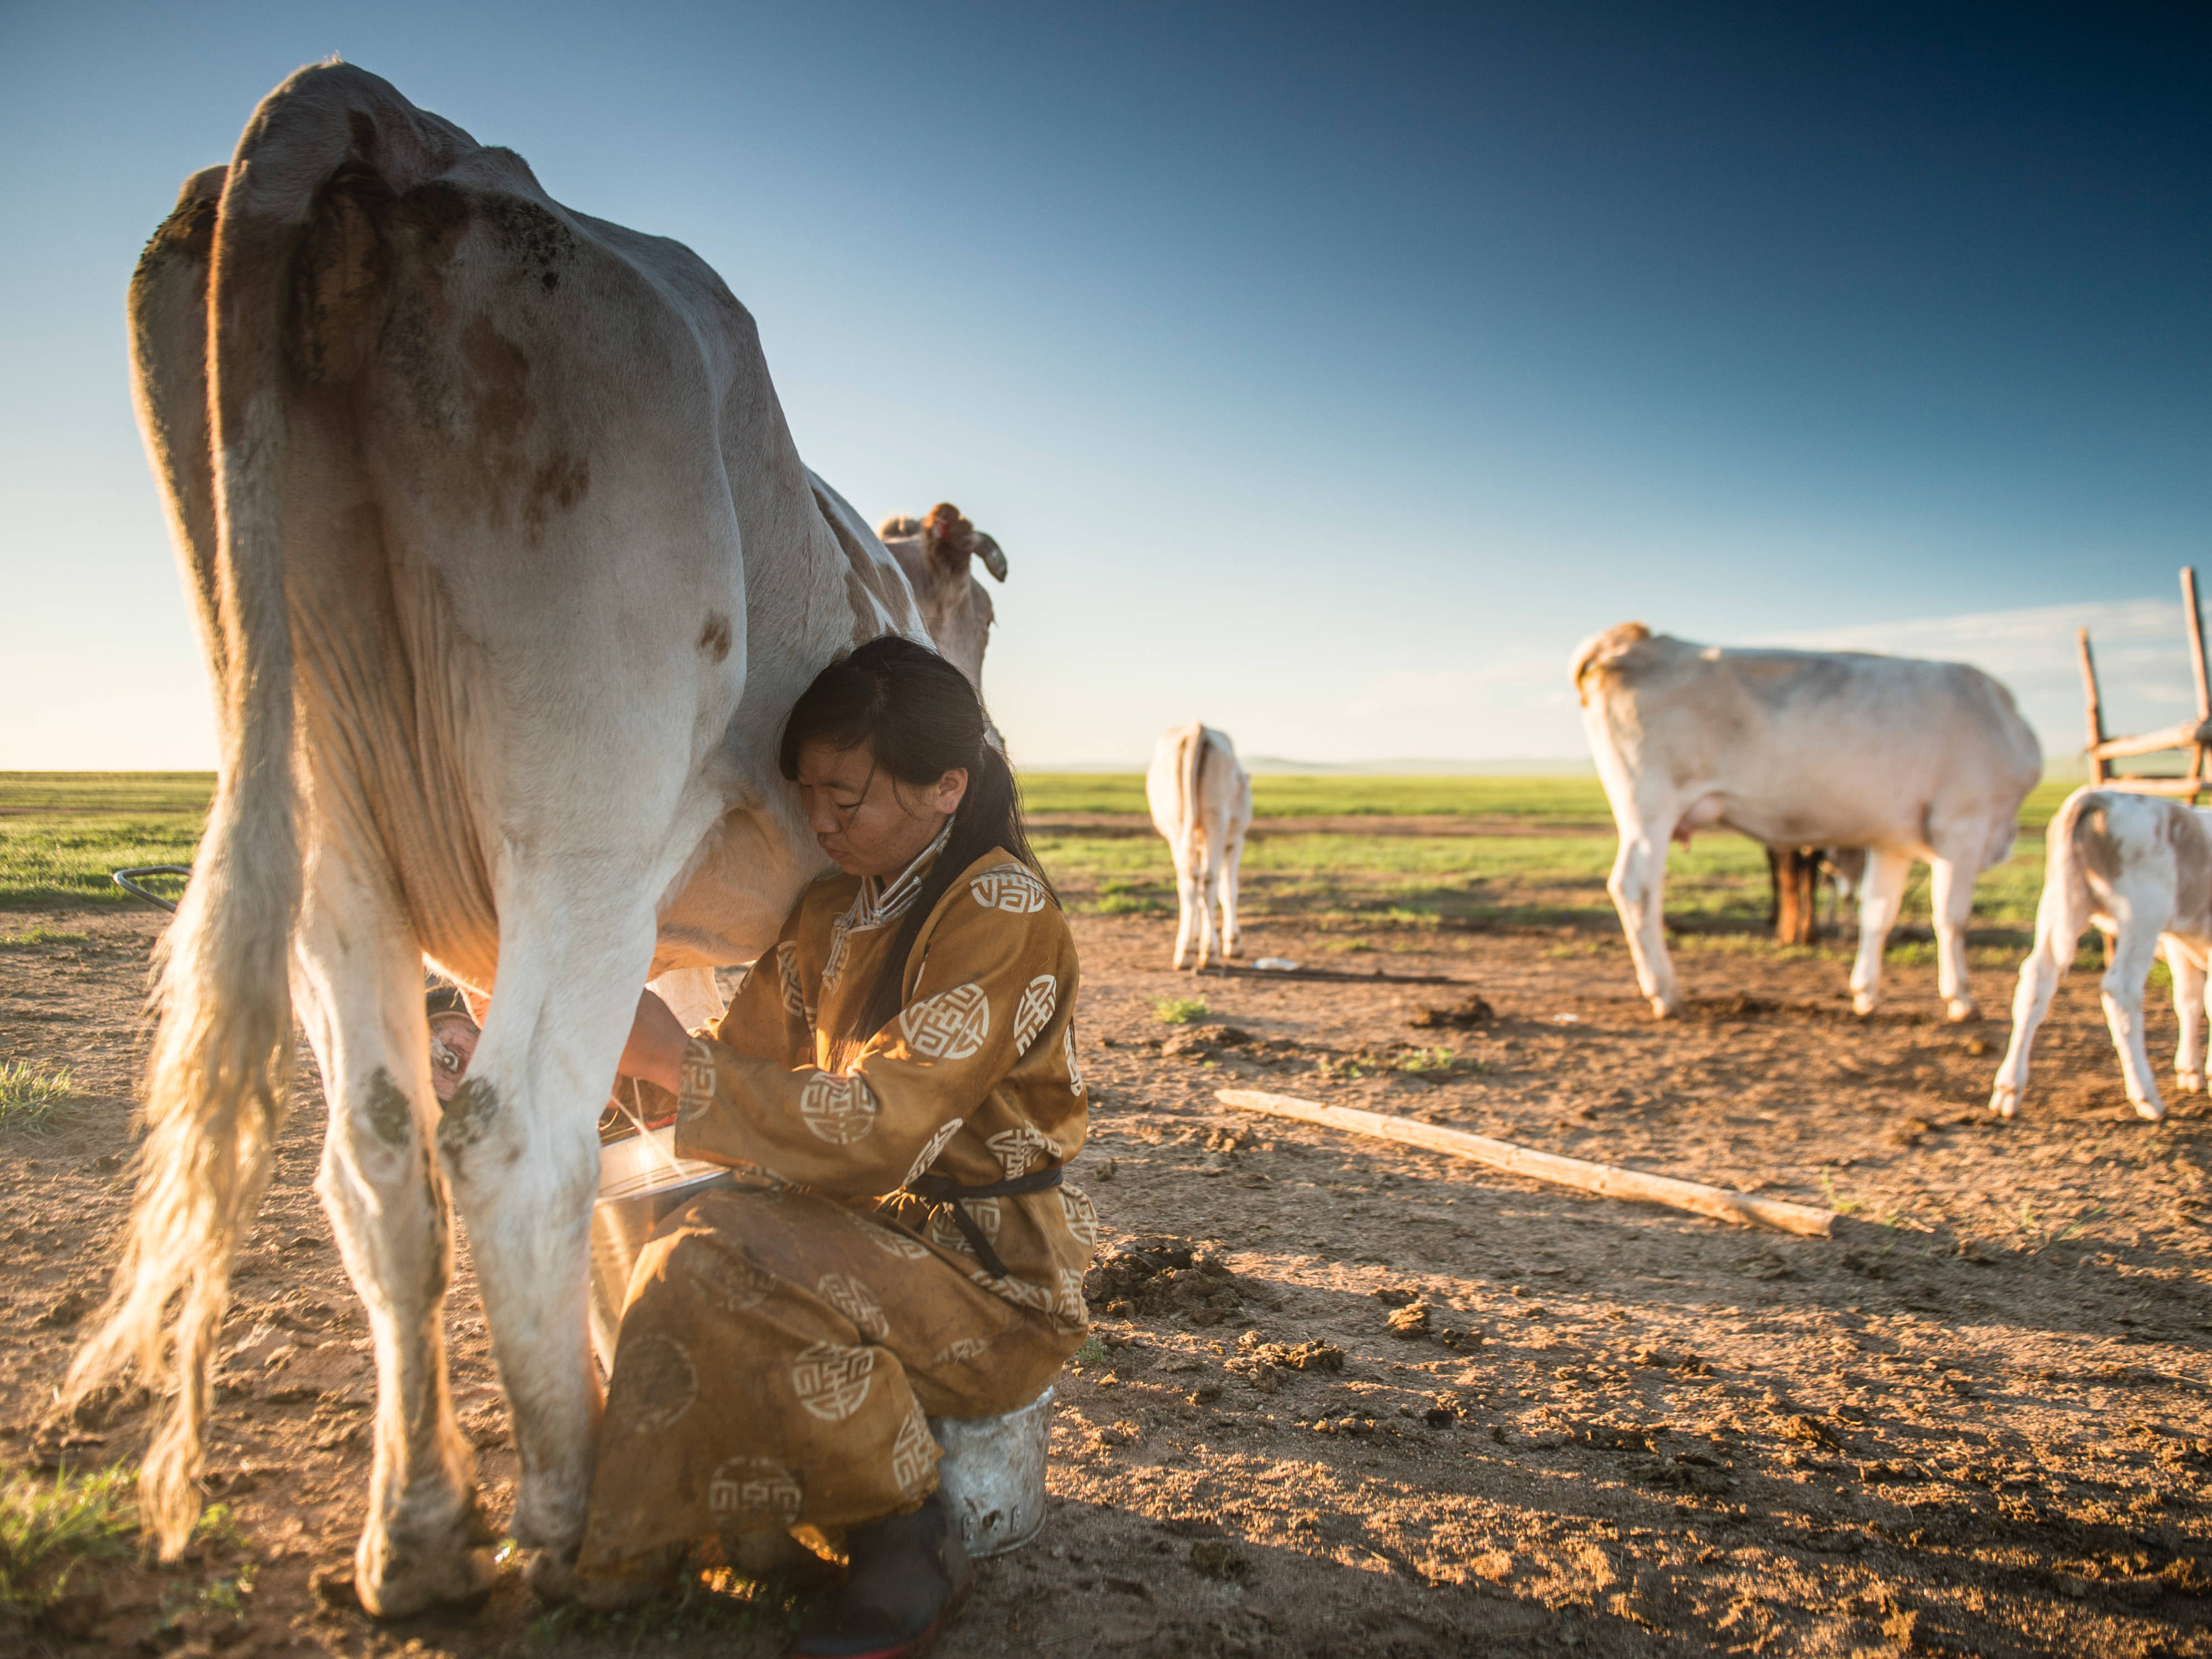 a woman beside a cow milking it